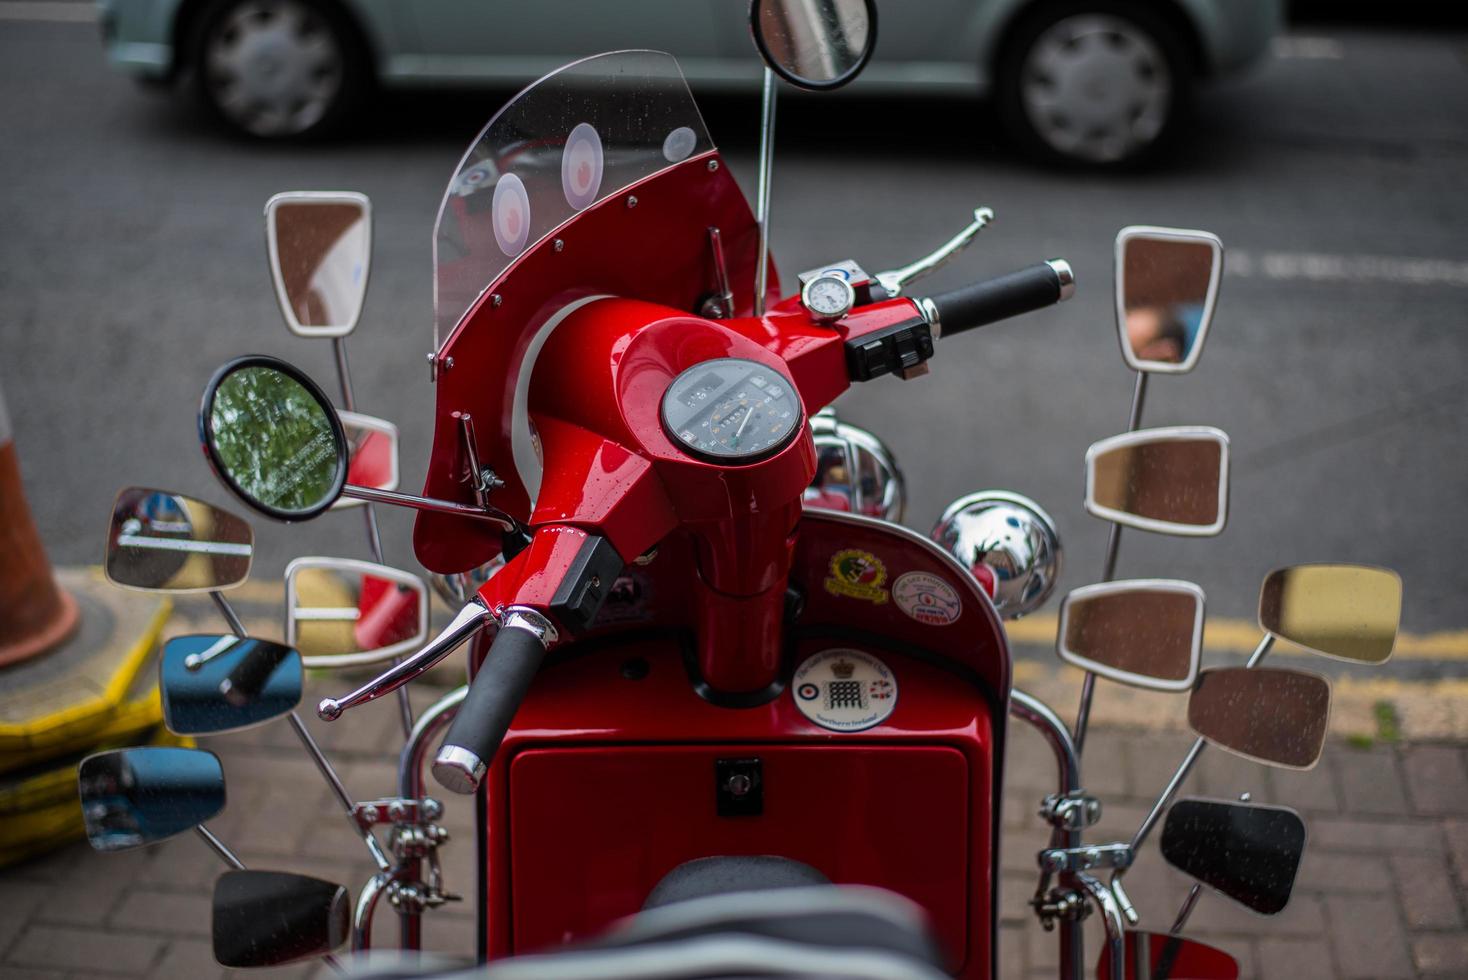 belfast, Storbritannien, 2020 - närbild av en röd motorcykel med massor av speglar på foto